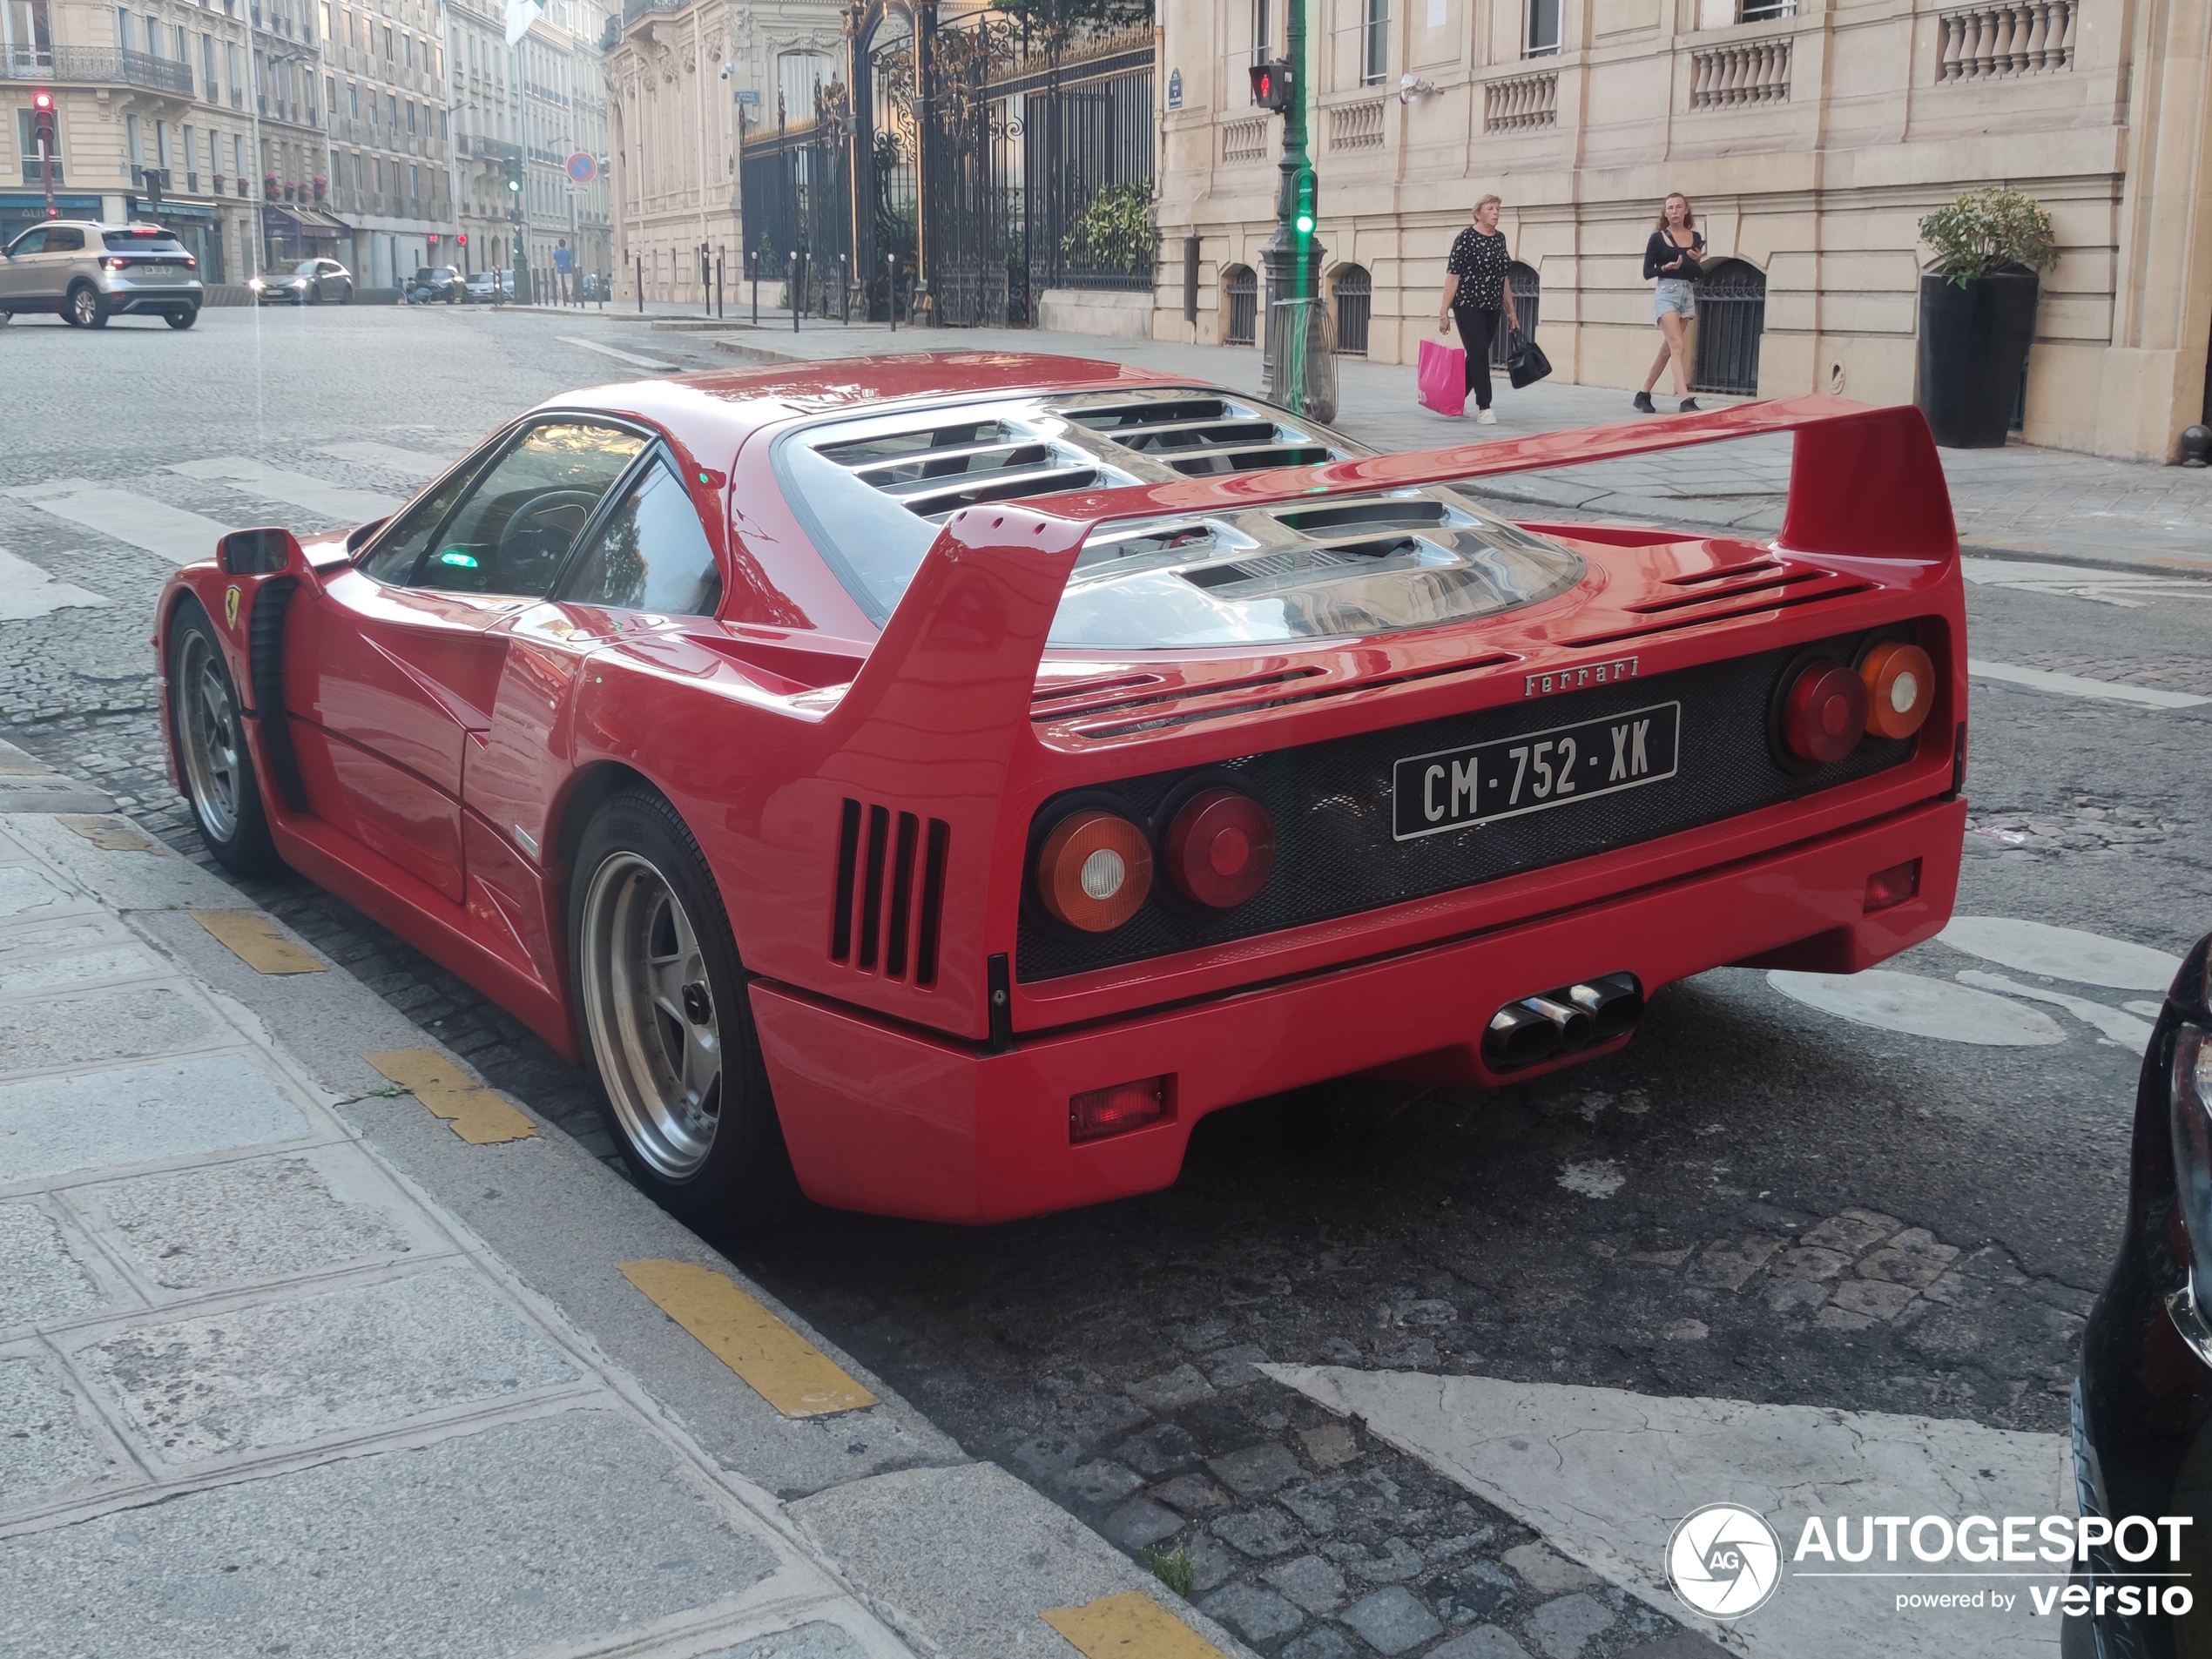 A Ferrari F40 shows up in Paris